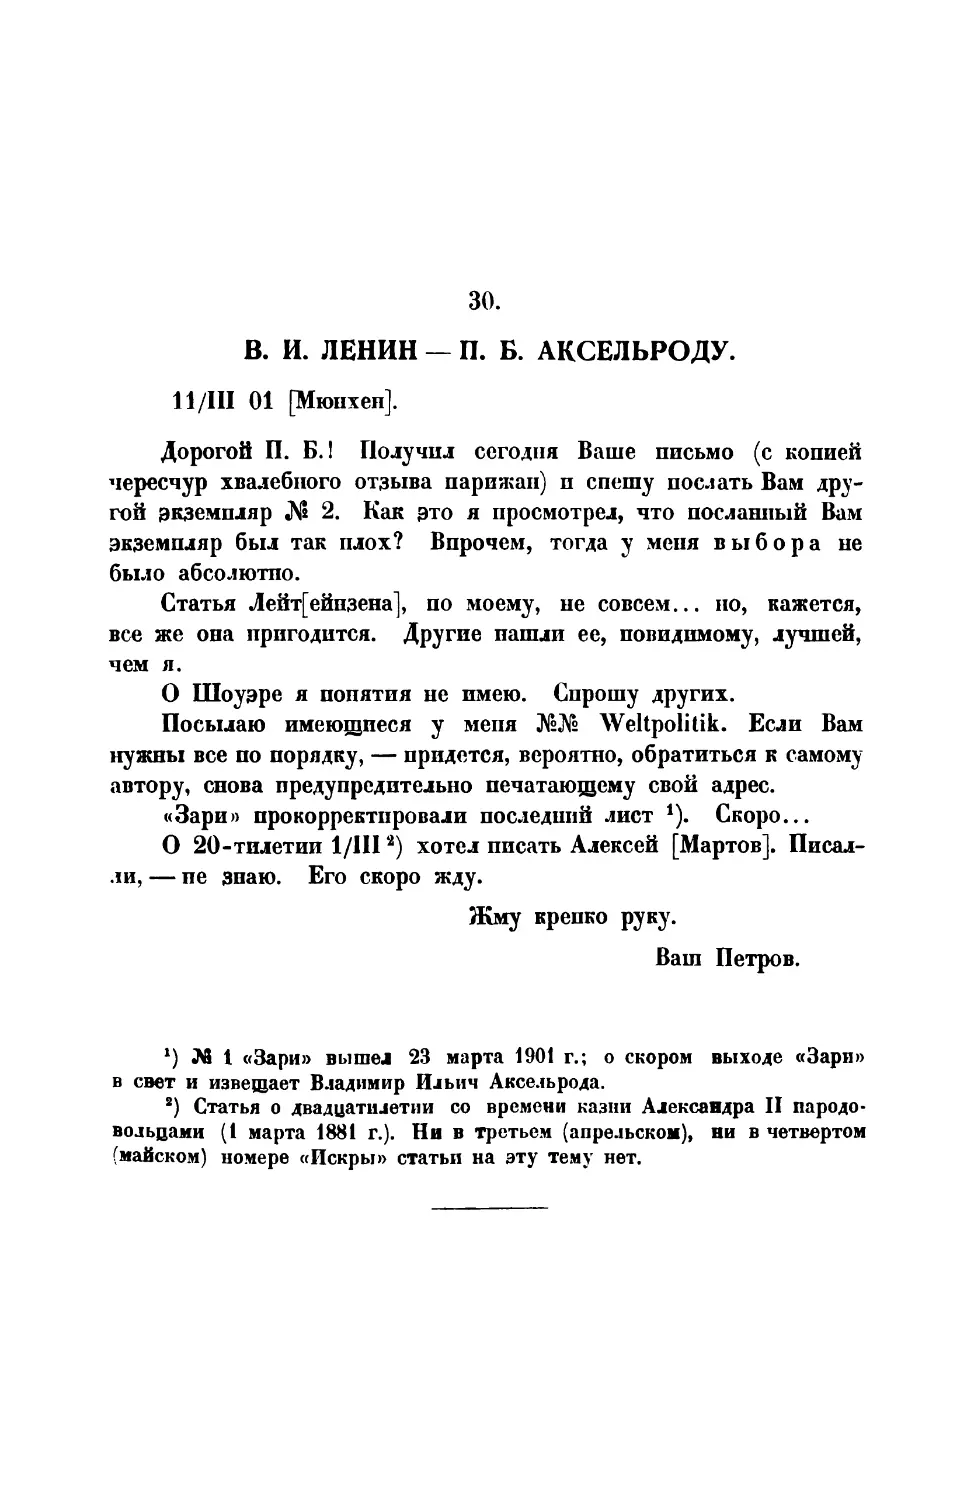 30. В. И. Ленин. — Письмо П. Б. Аксельроду от 11 III 1901 г.